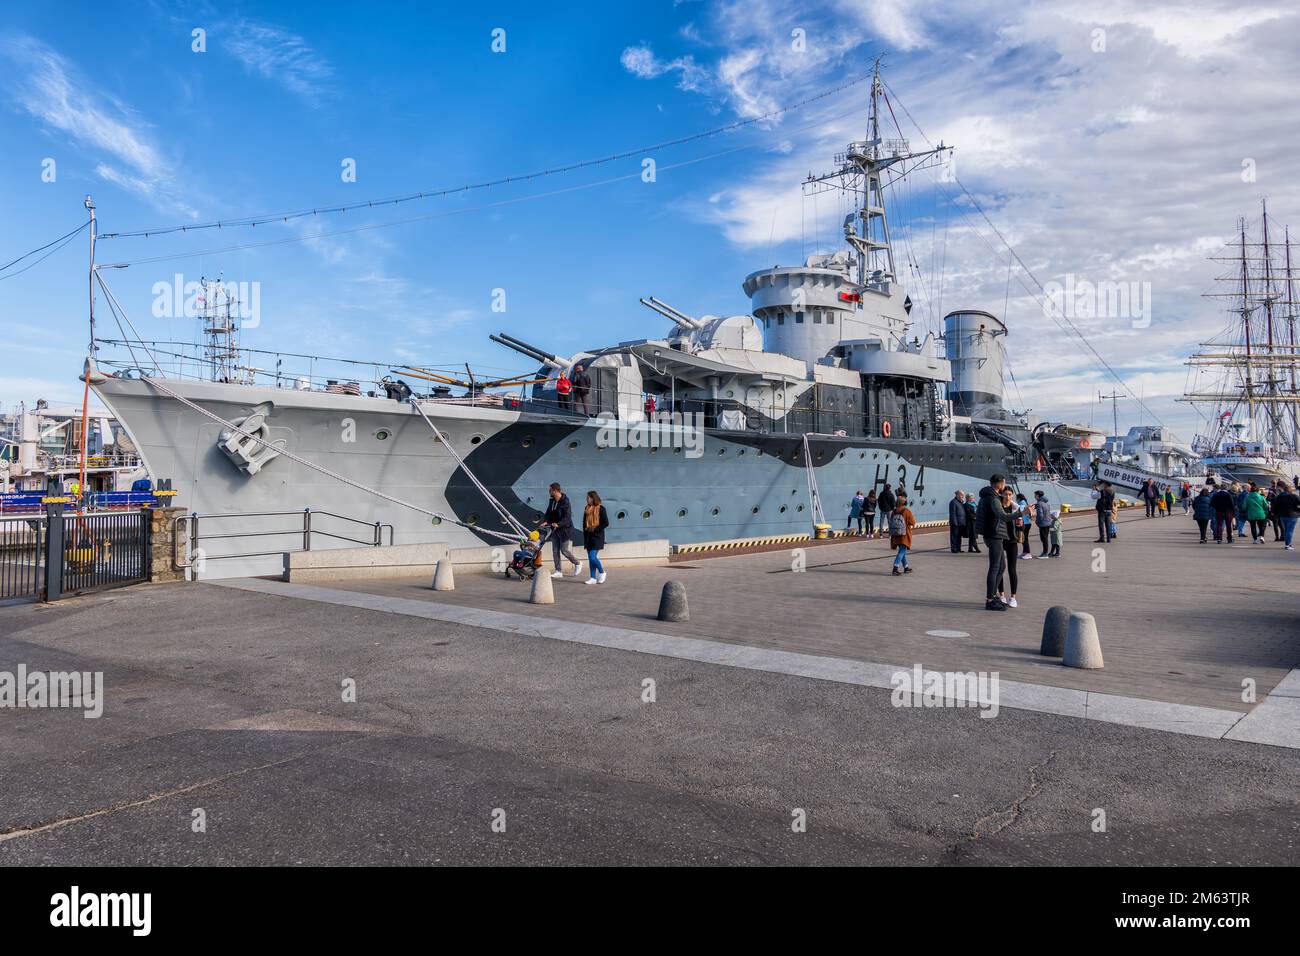 Gdynia, Polen - 8. Oktober 2022 - ORP Blyskawica (Blitzschlag) Zerstörer der Klasse Grom der polnischen Marine, das während des Zweiten Weltkriegs diente Museum Stockfoto